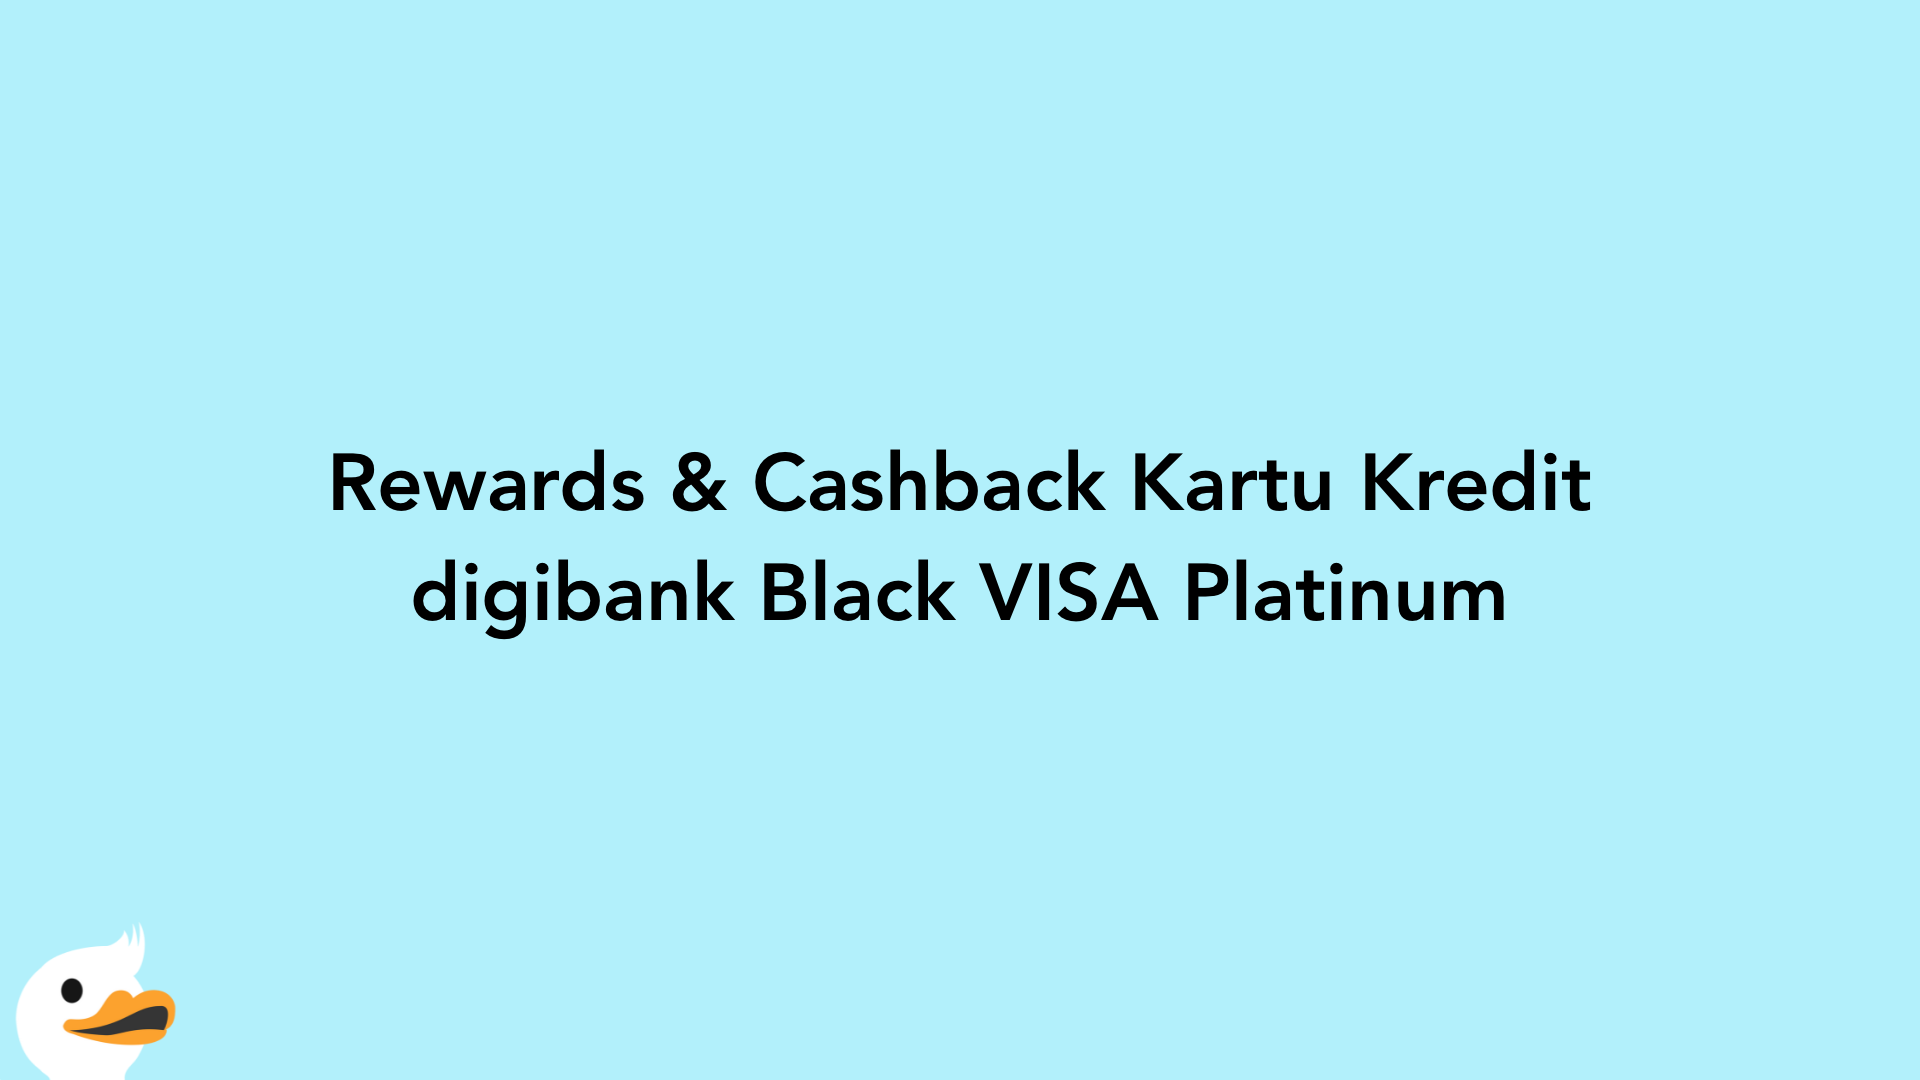 Rewards & Cashback Kartu Kredit digibank Black VISA Platinum